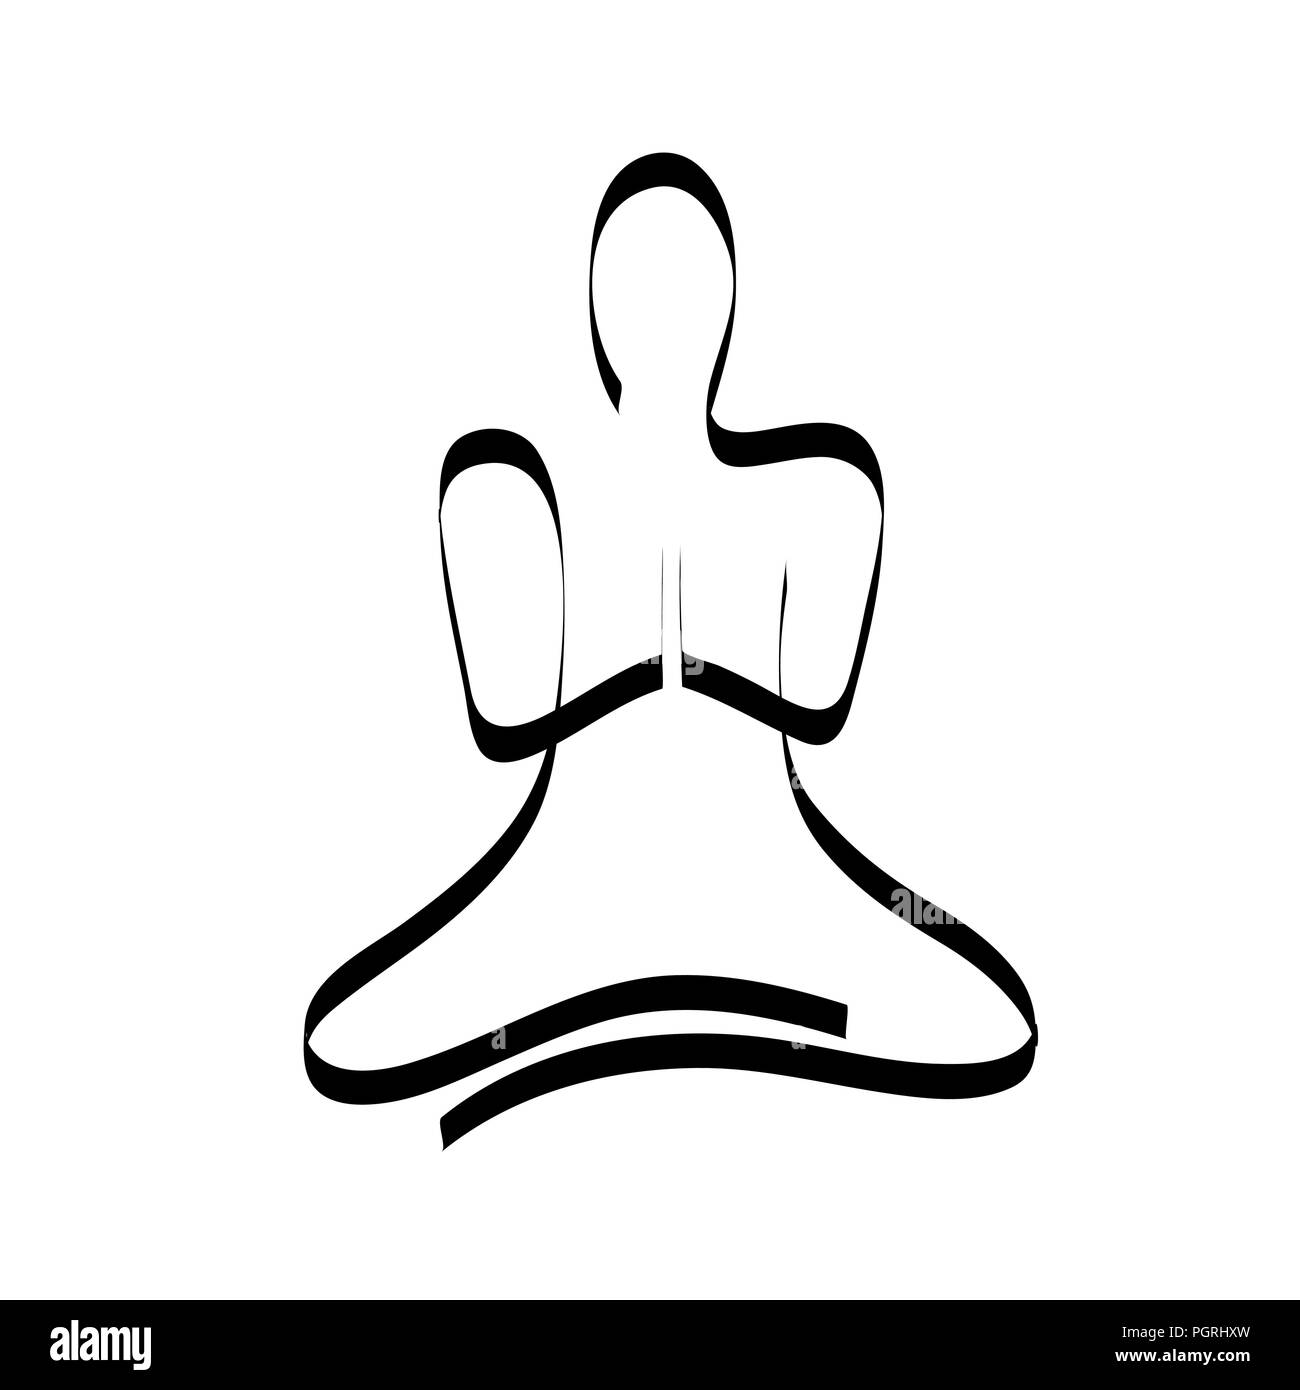 Disegno a mano persona in posa di meditazione su sfondo bianco illustrazione vettoriale EPS10 Illustrazione Vettoriale